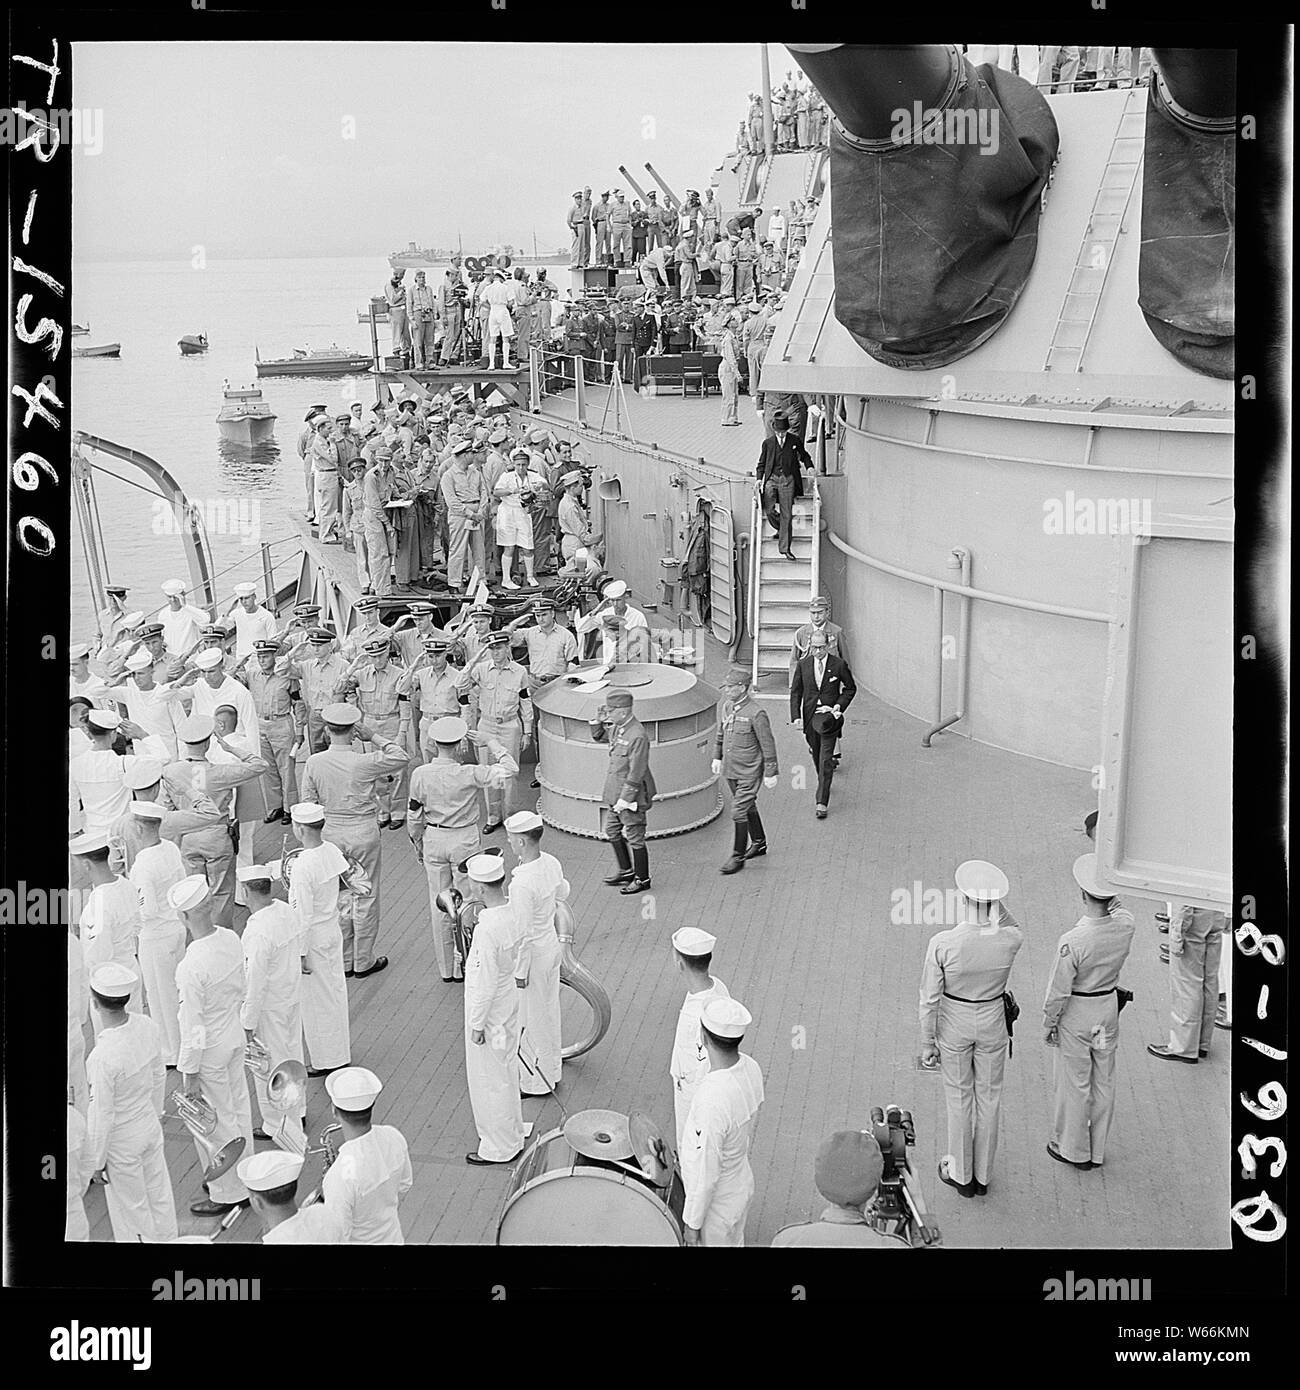 Inviati giapponese di lasciare la USS Missouri (BB-63) nella baia di Tokyo, Giappone, dopo la firma di documenti di consegna. Foto Stock